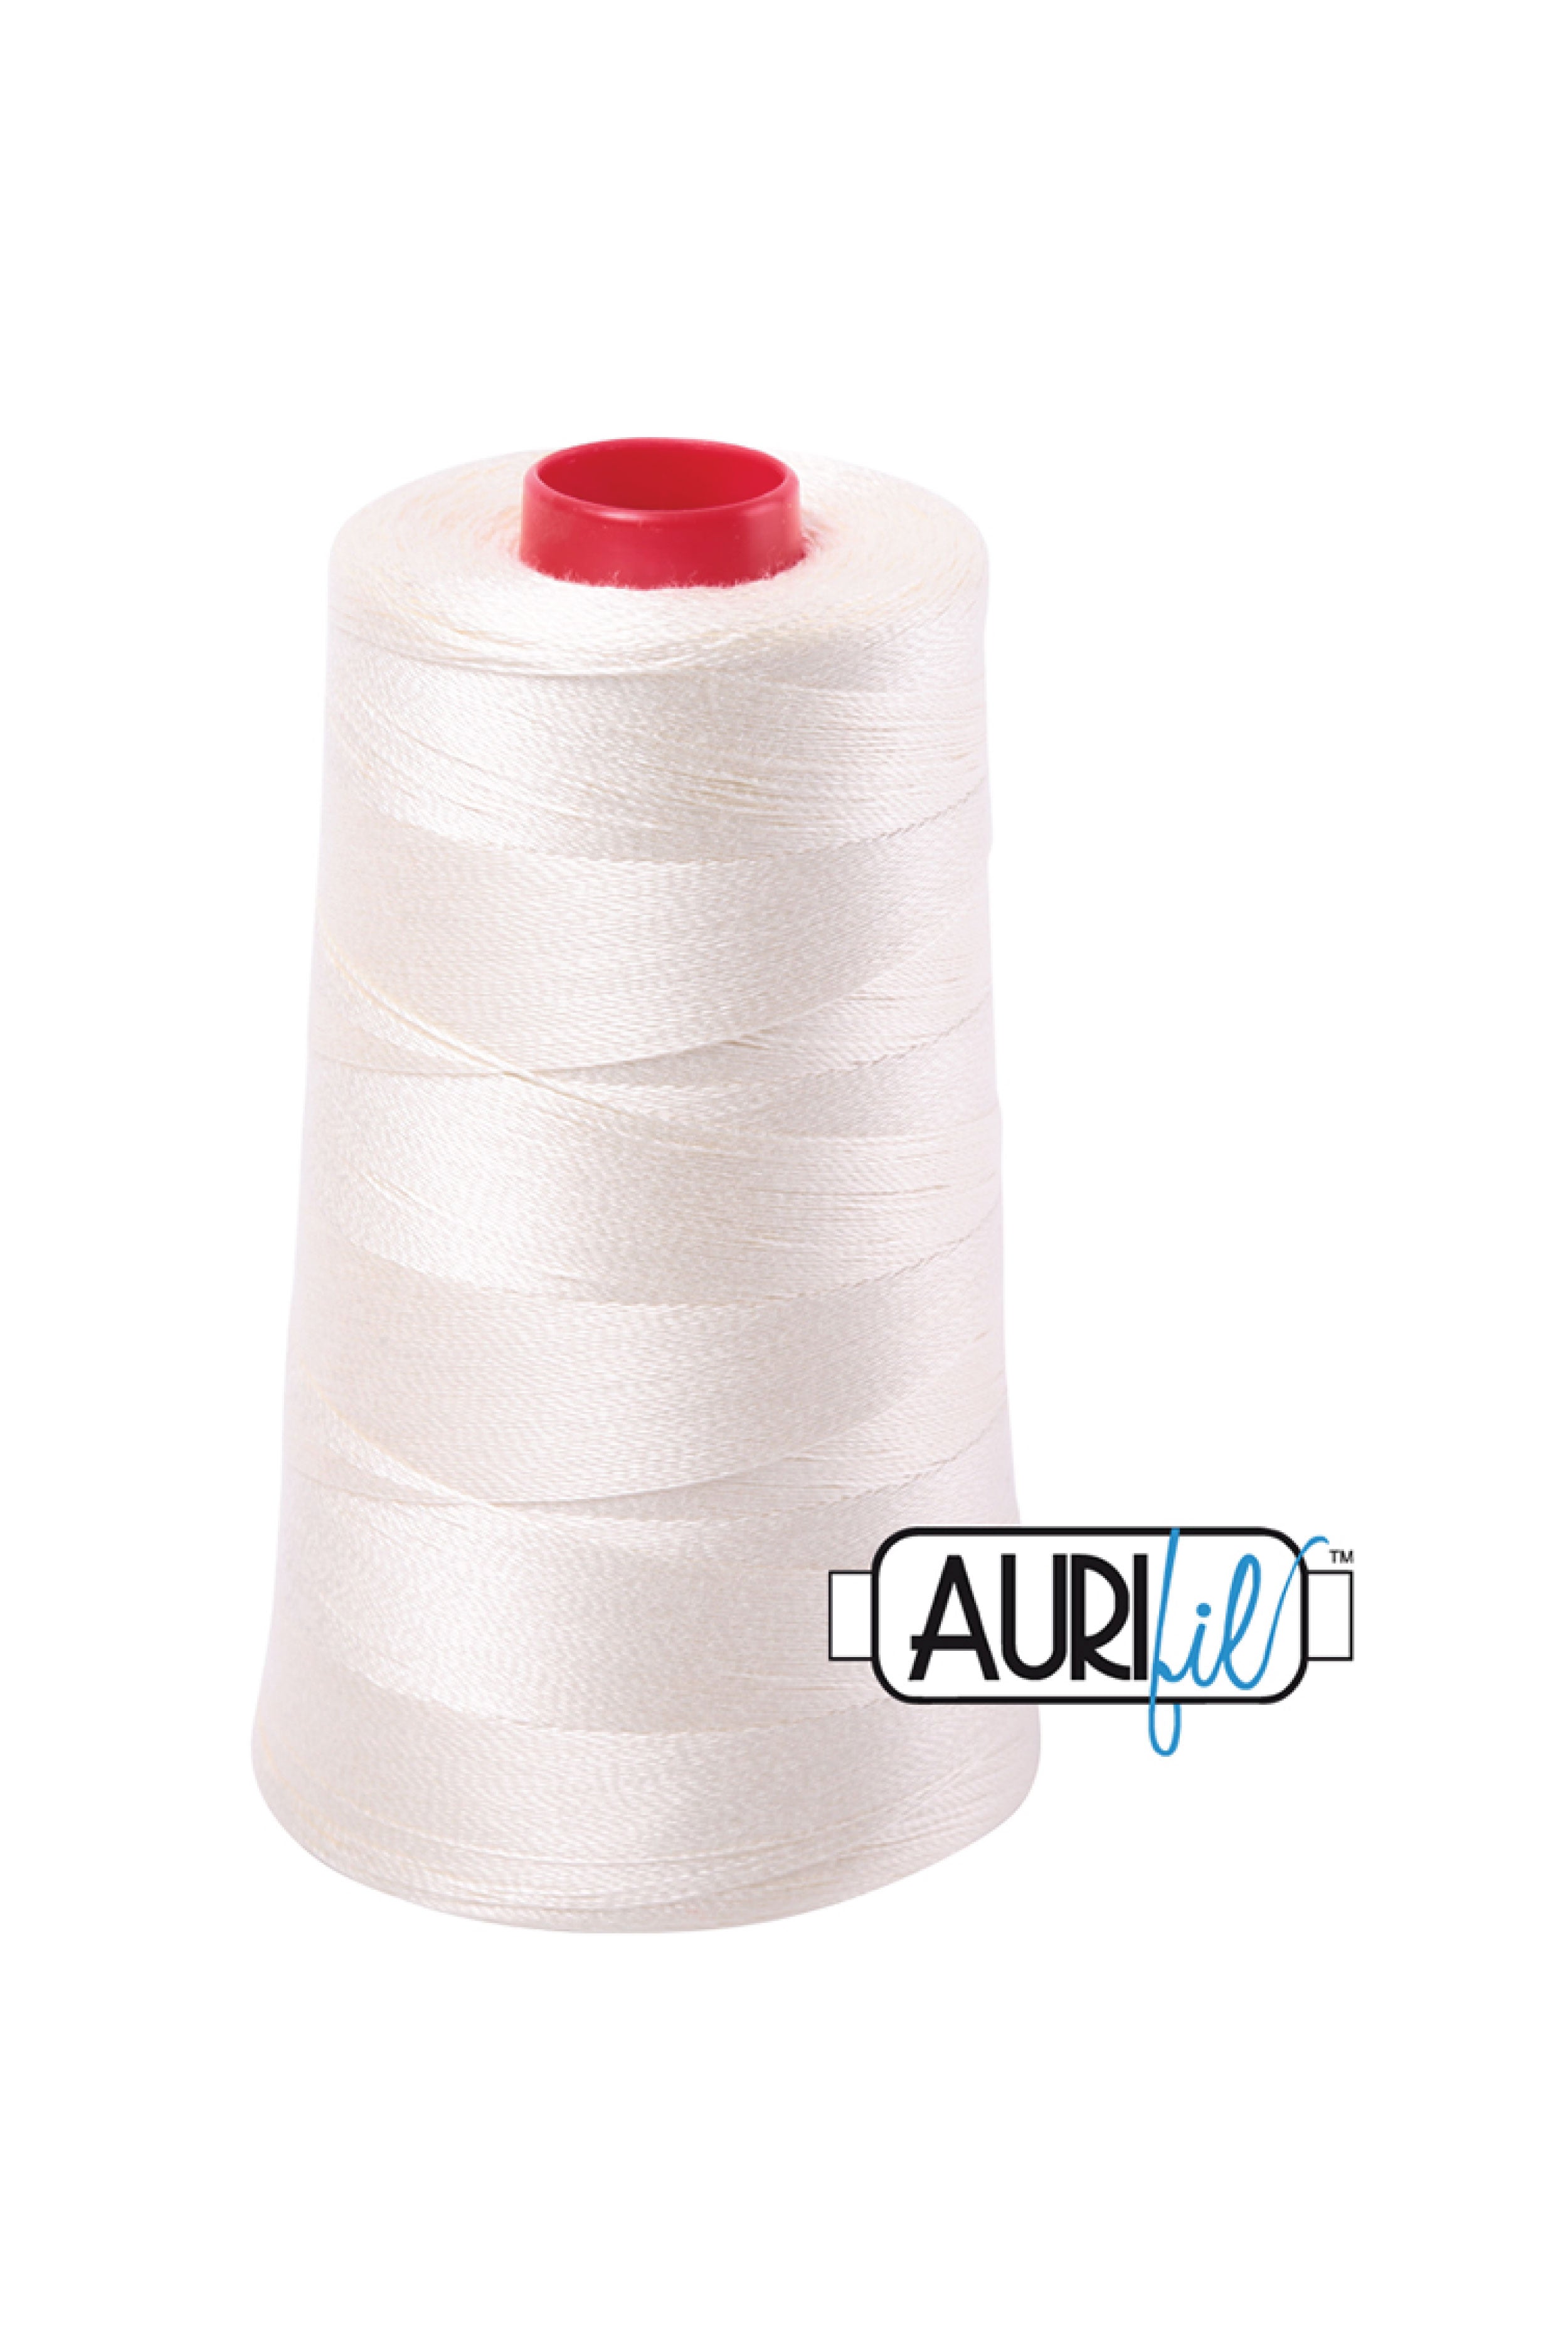 Aurifil Thread Spool- 2630